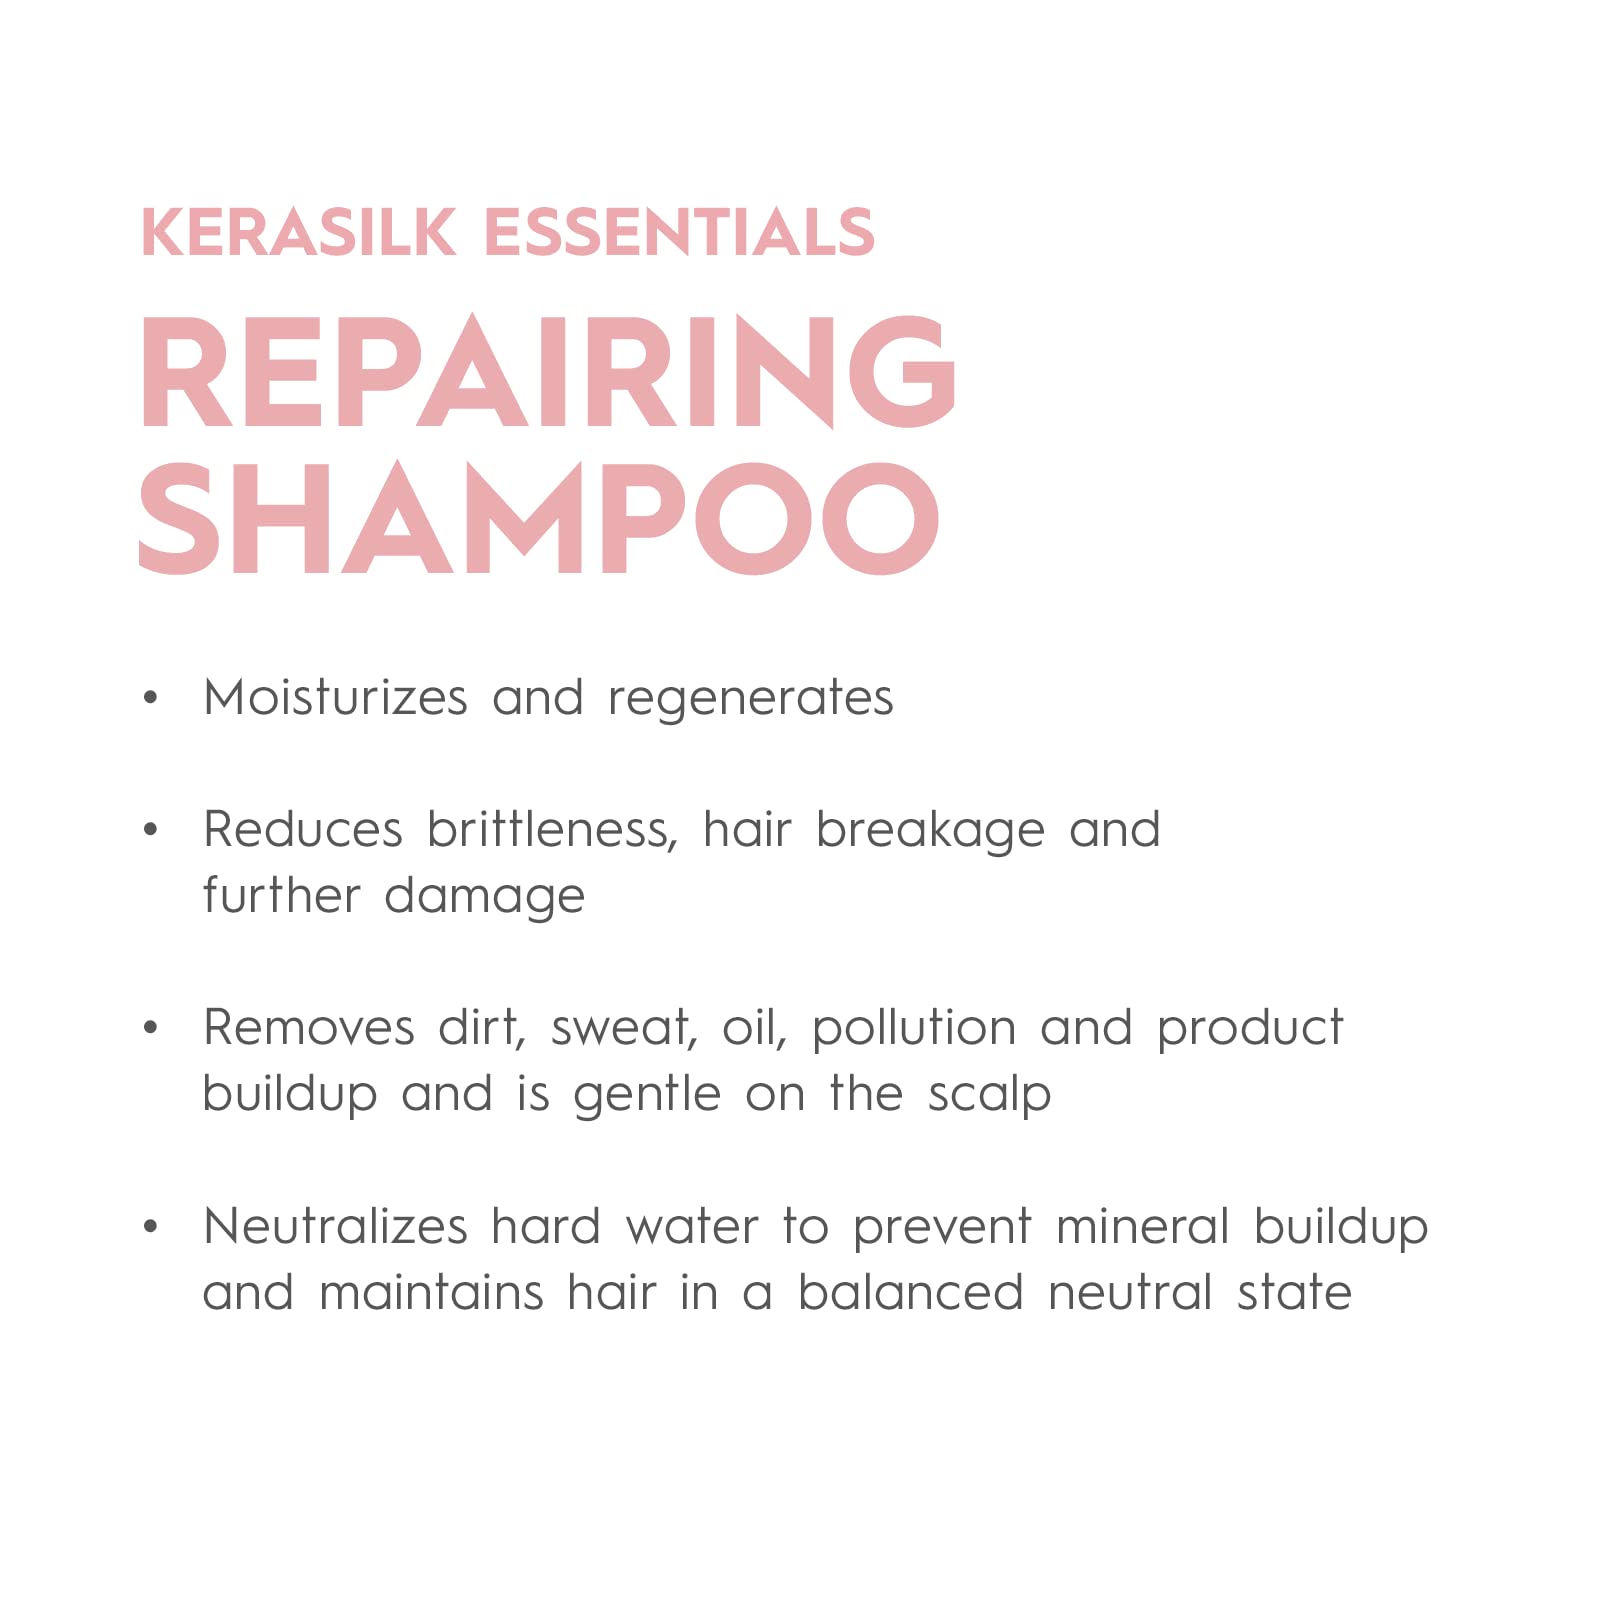 KERASILK Repairing Shampoo